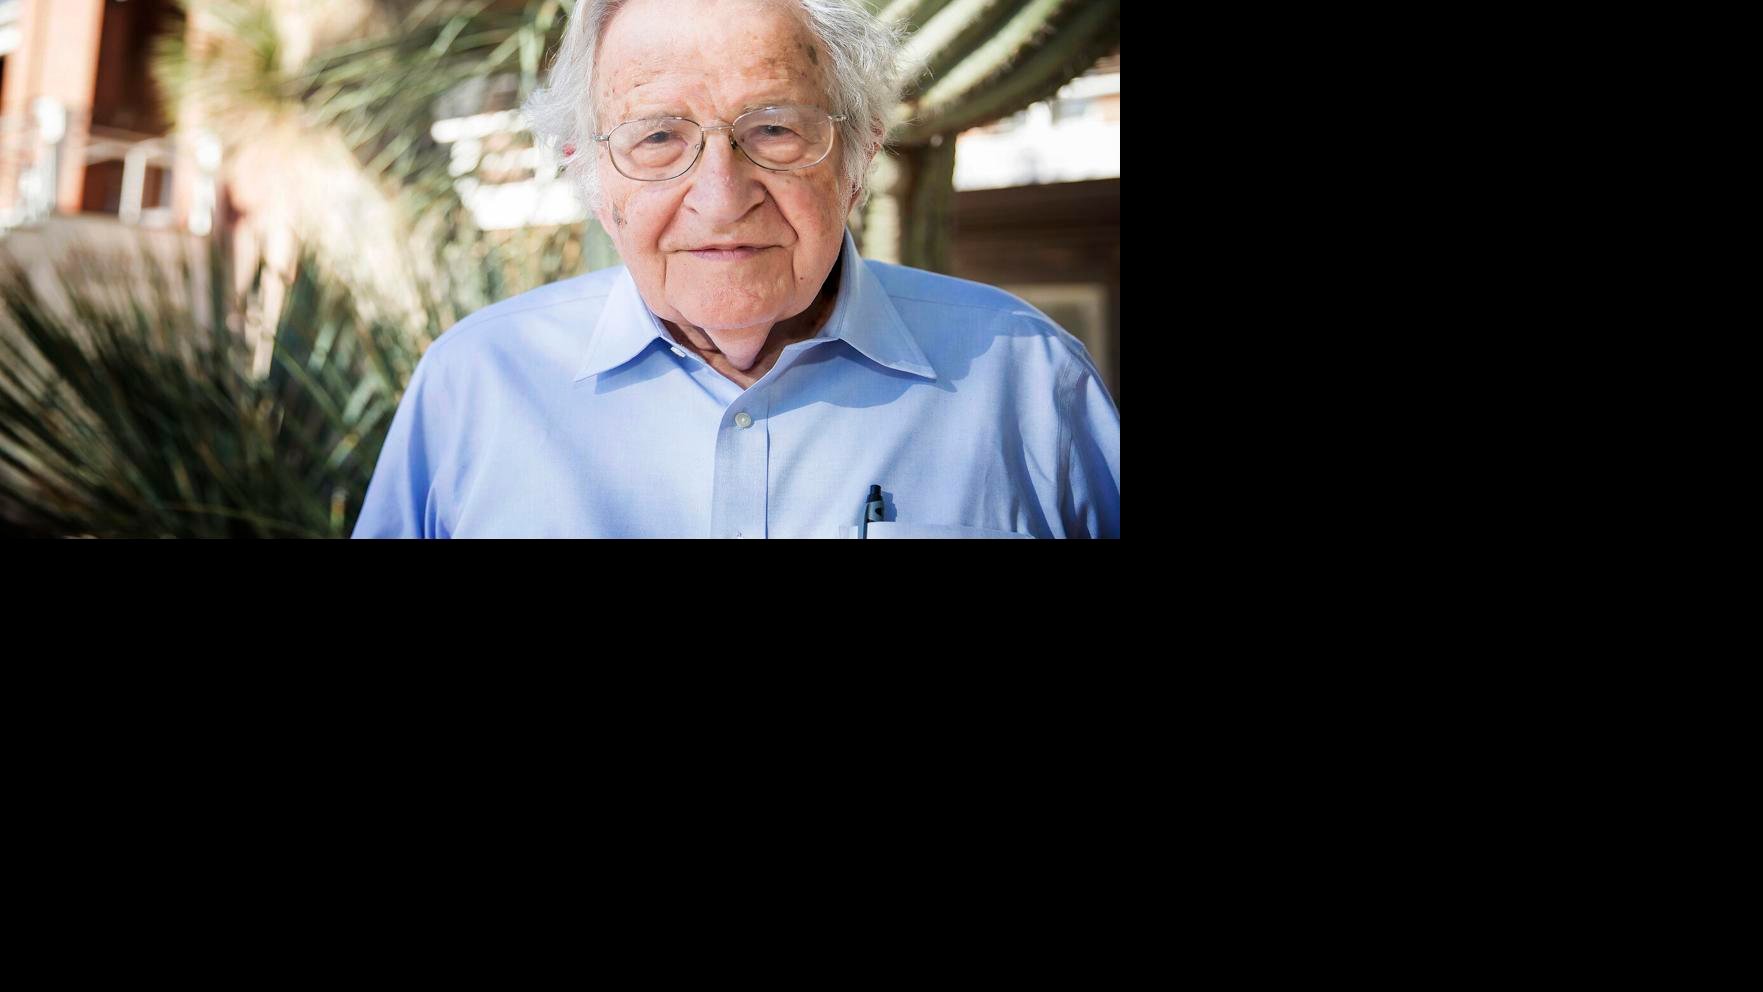 Noam Chomsky hospitalized after massive stroke